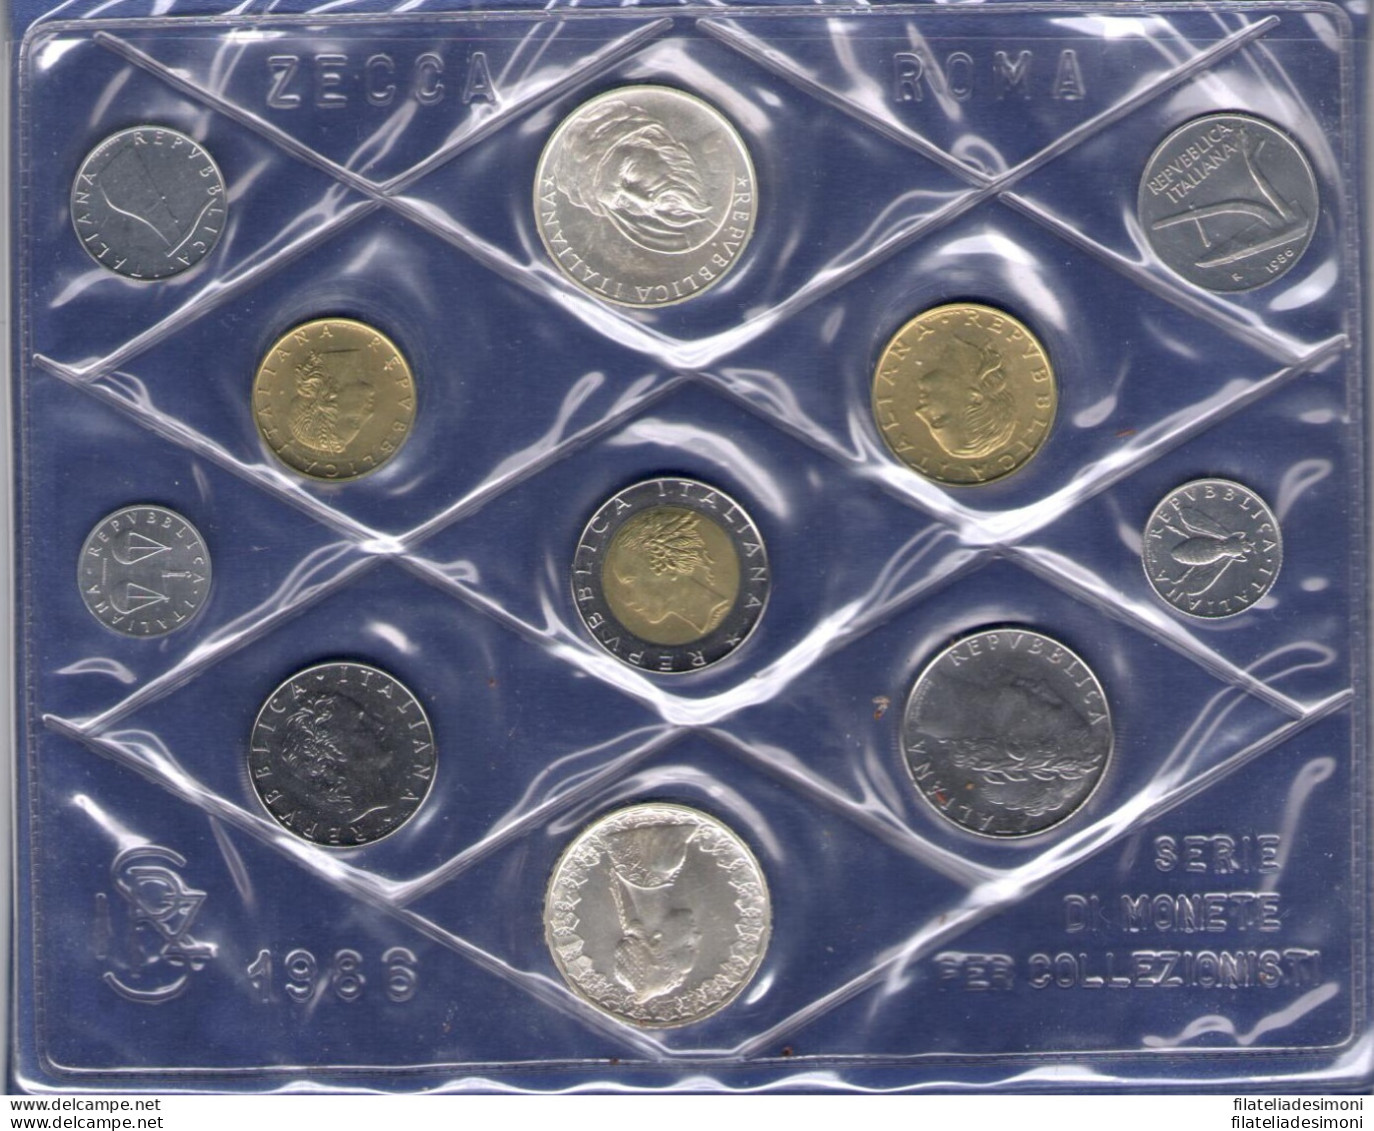 1986 Italia - Monetazione Divisionale Annata Completa 11 Valori - FDC - Mint Sets & Proof Sets